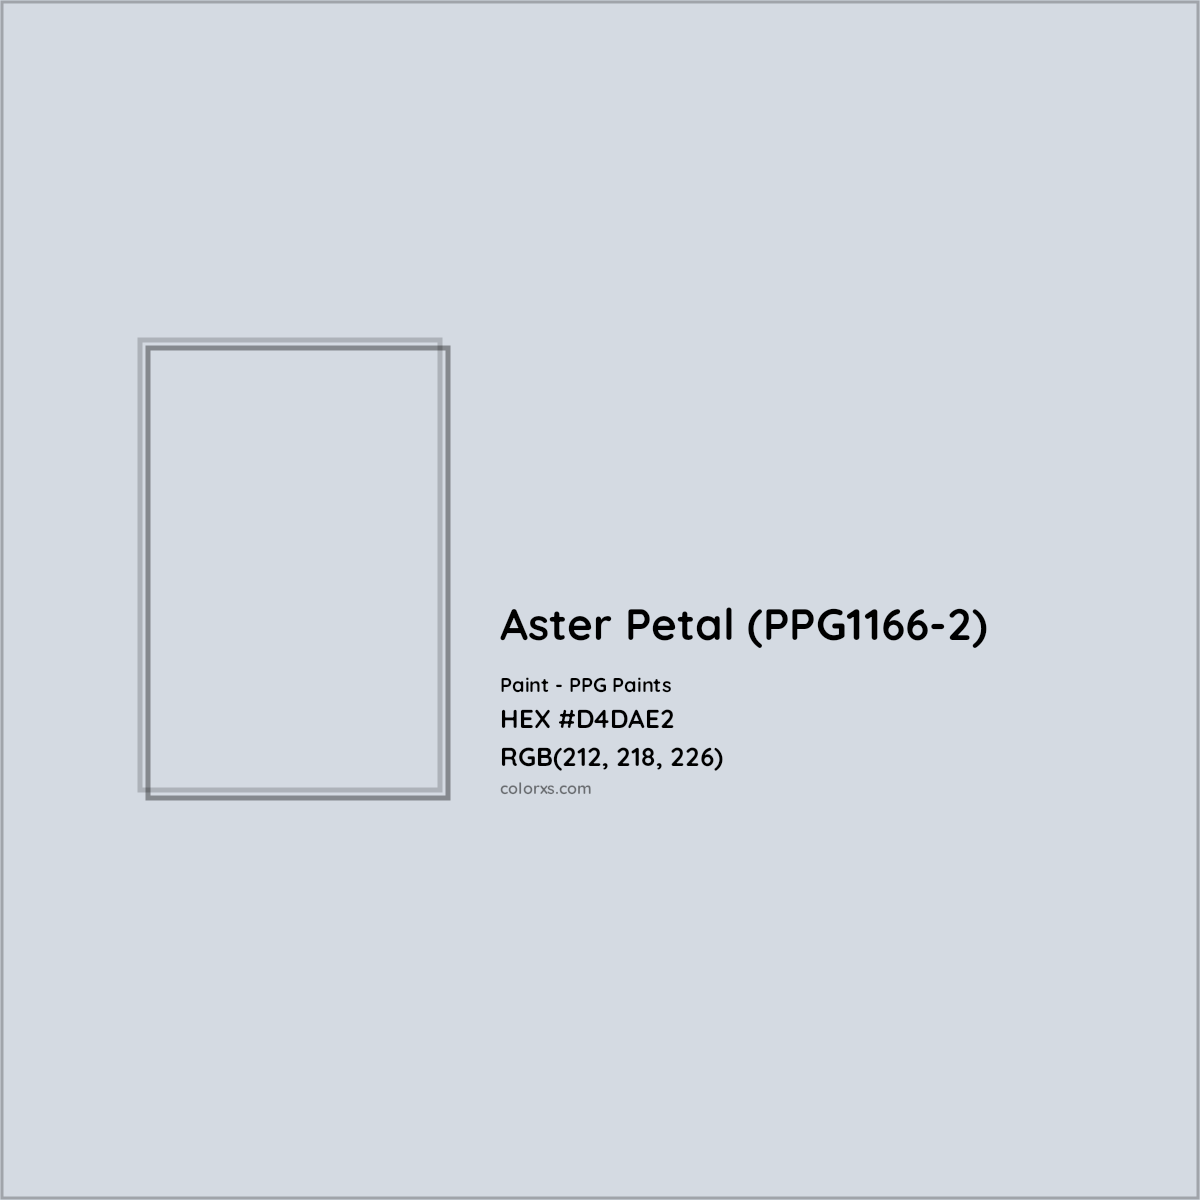 HEX #D4DAE2 Aster Petal (PPG1166-2) Paint PPG Paints - Color Code